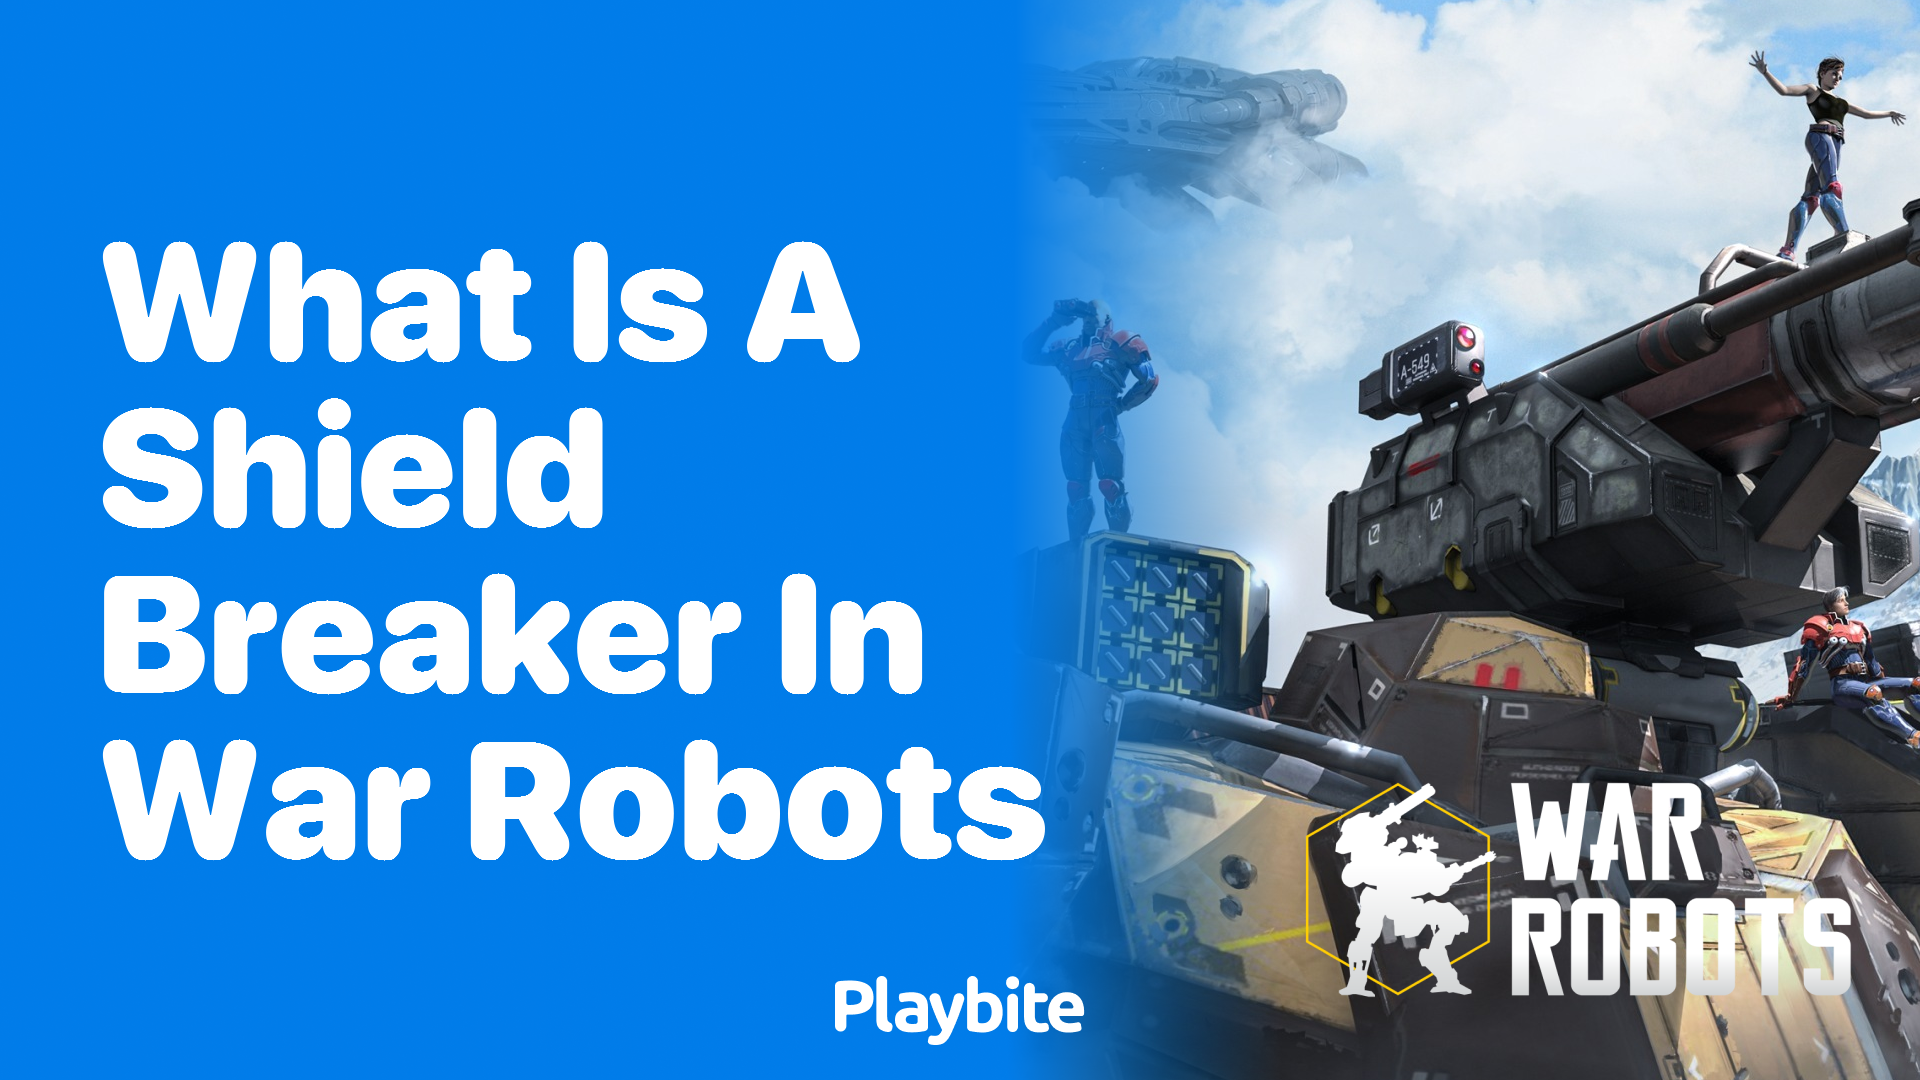 What is a Shield Breaker in War Robots?